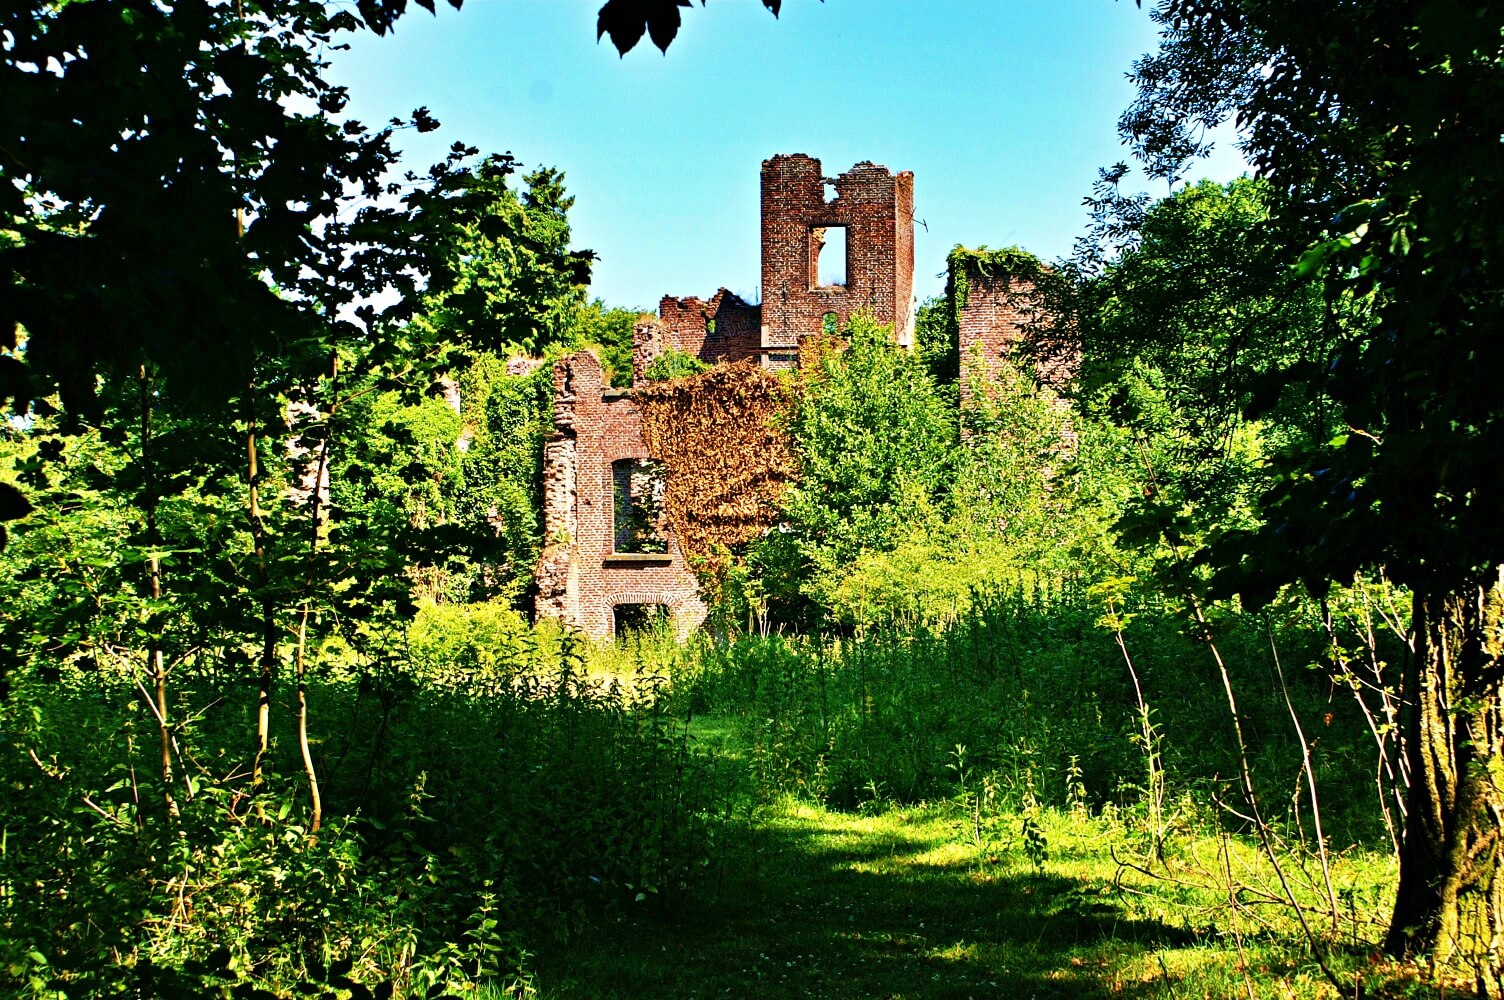 Bleijenbeek Castle
